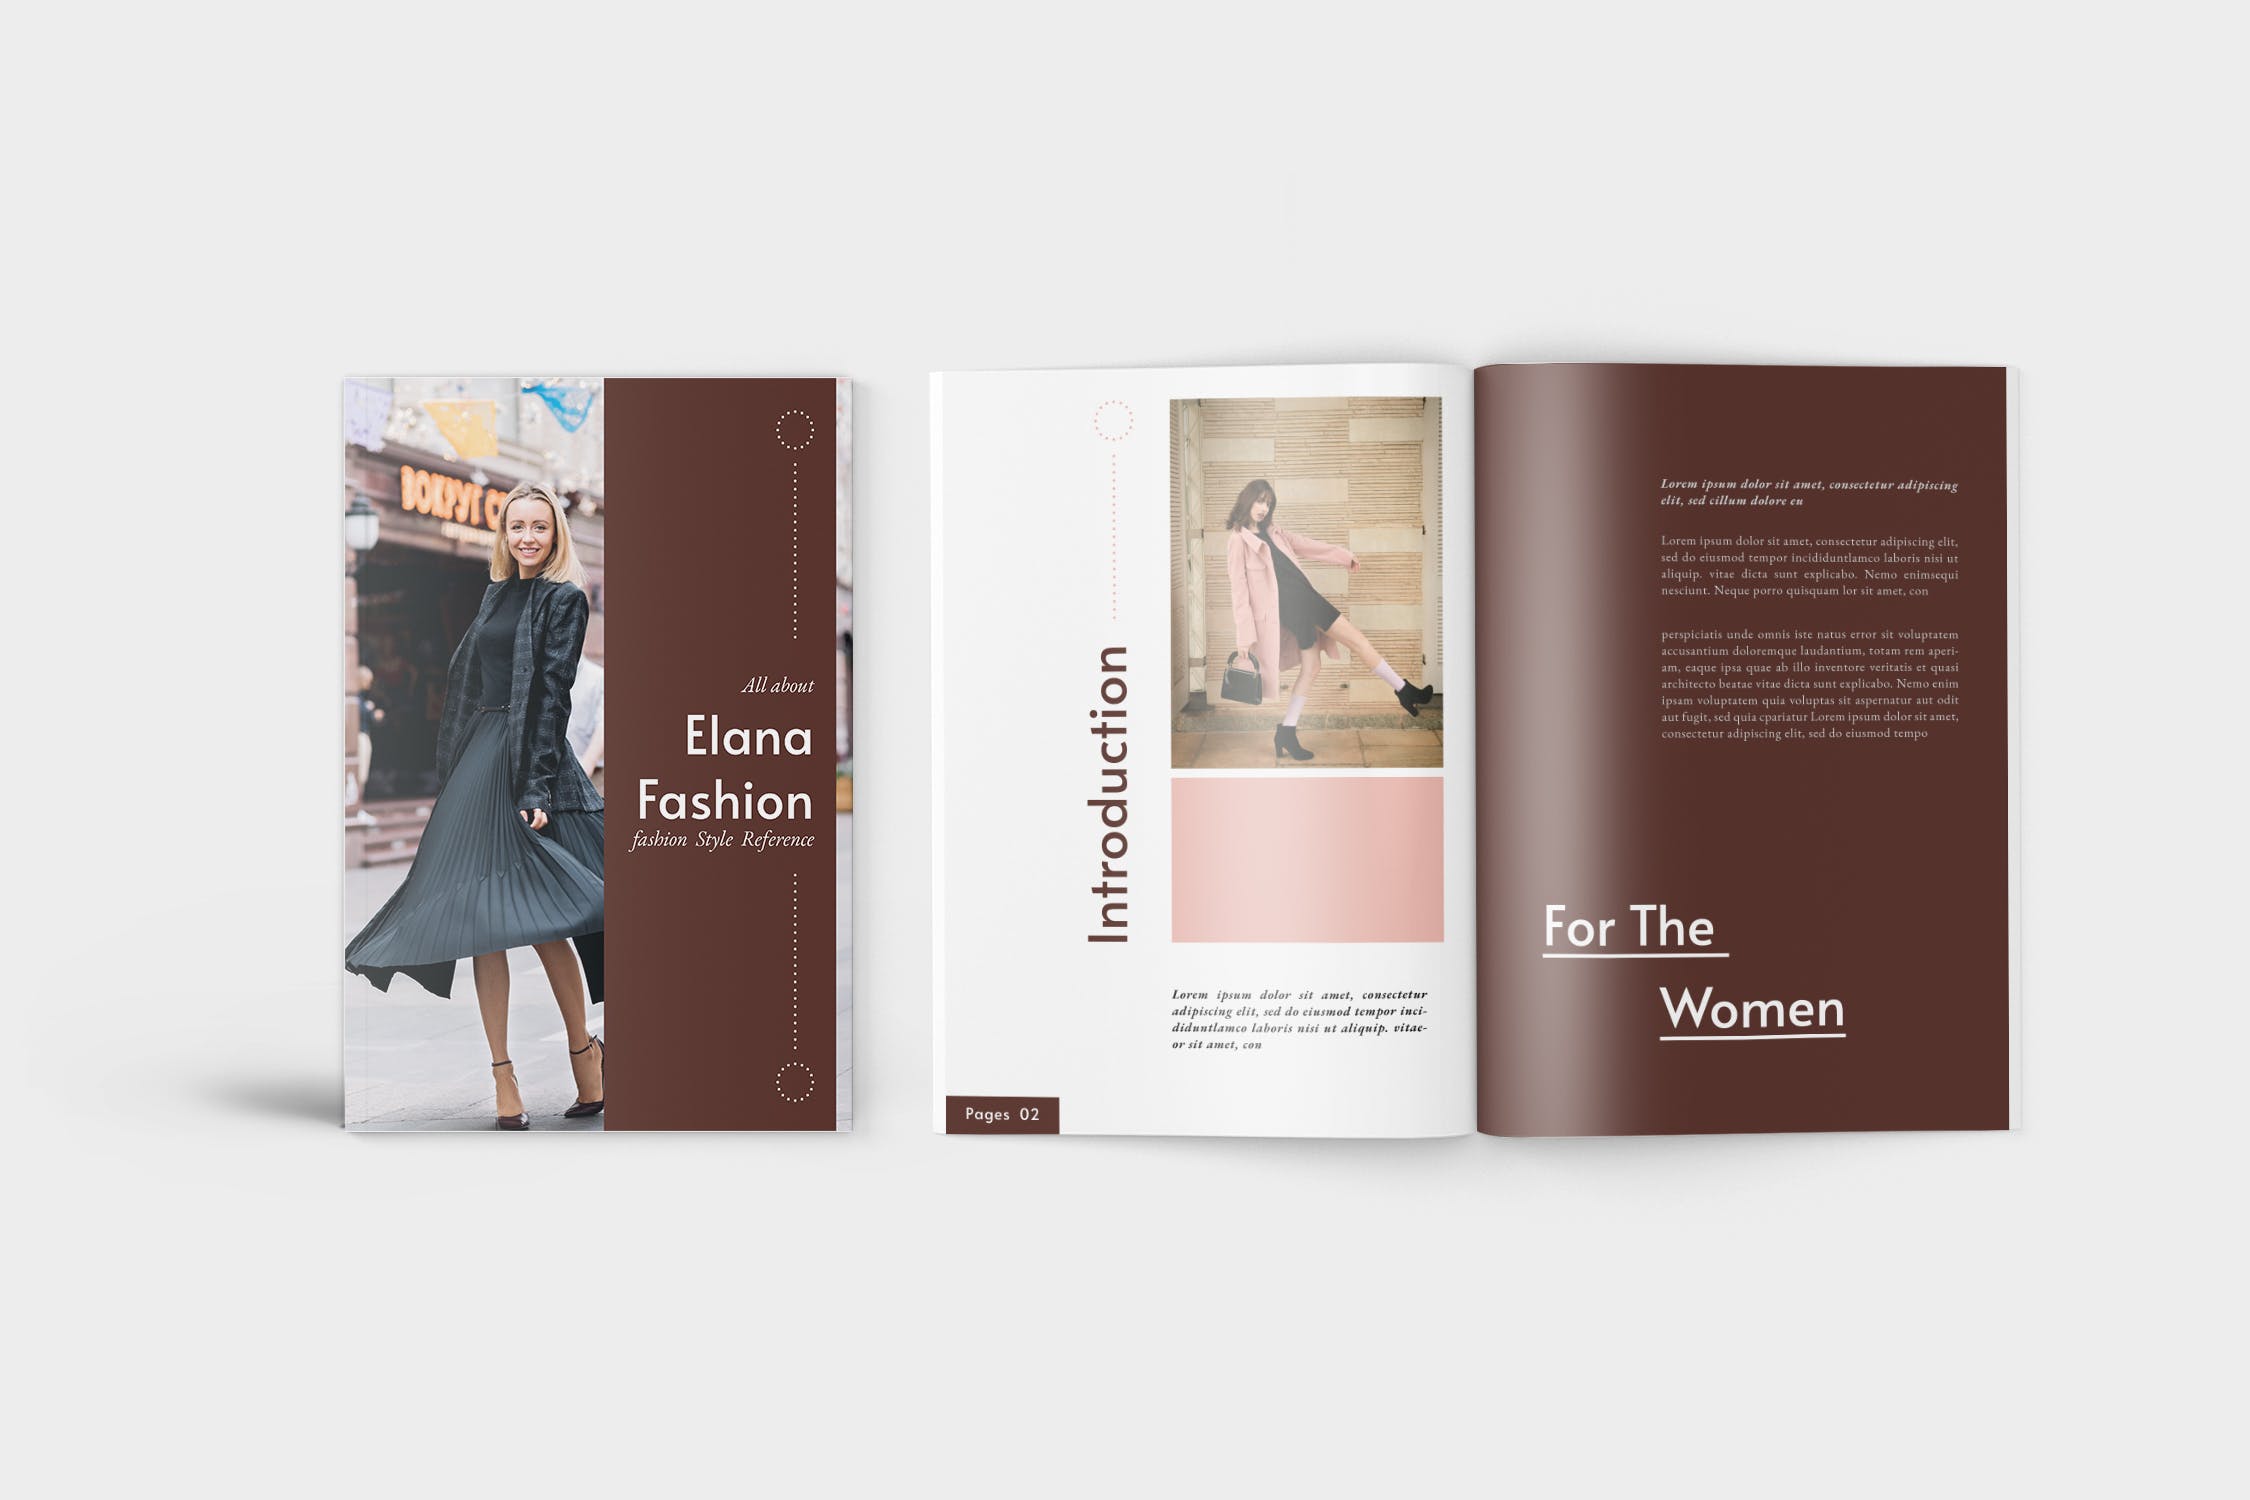 时装产品大洋岛精选目录设计模板 Elana Fashion Lookbook Catalogue插图